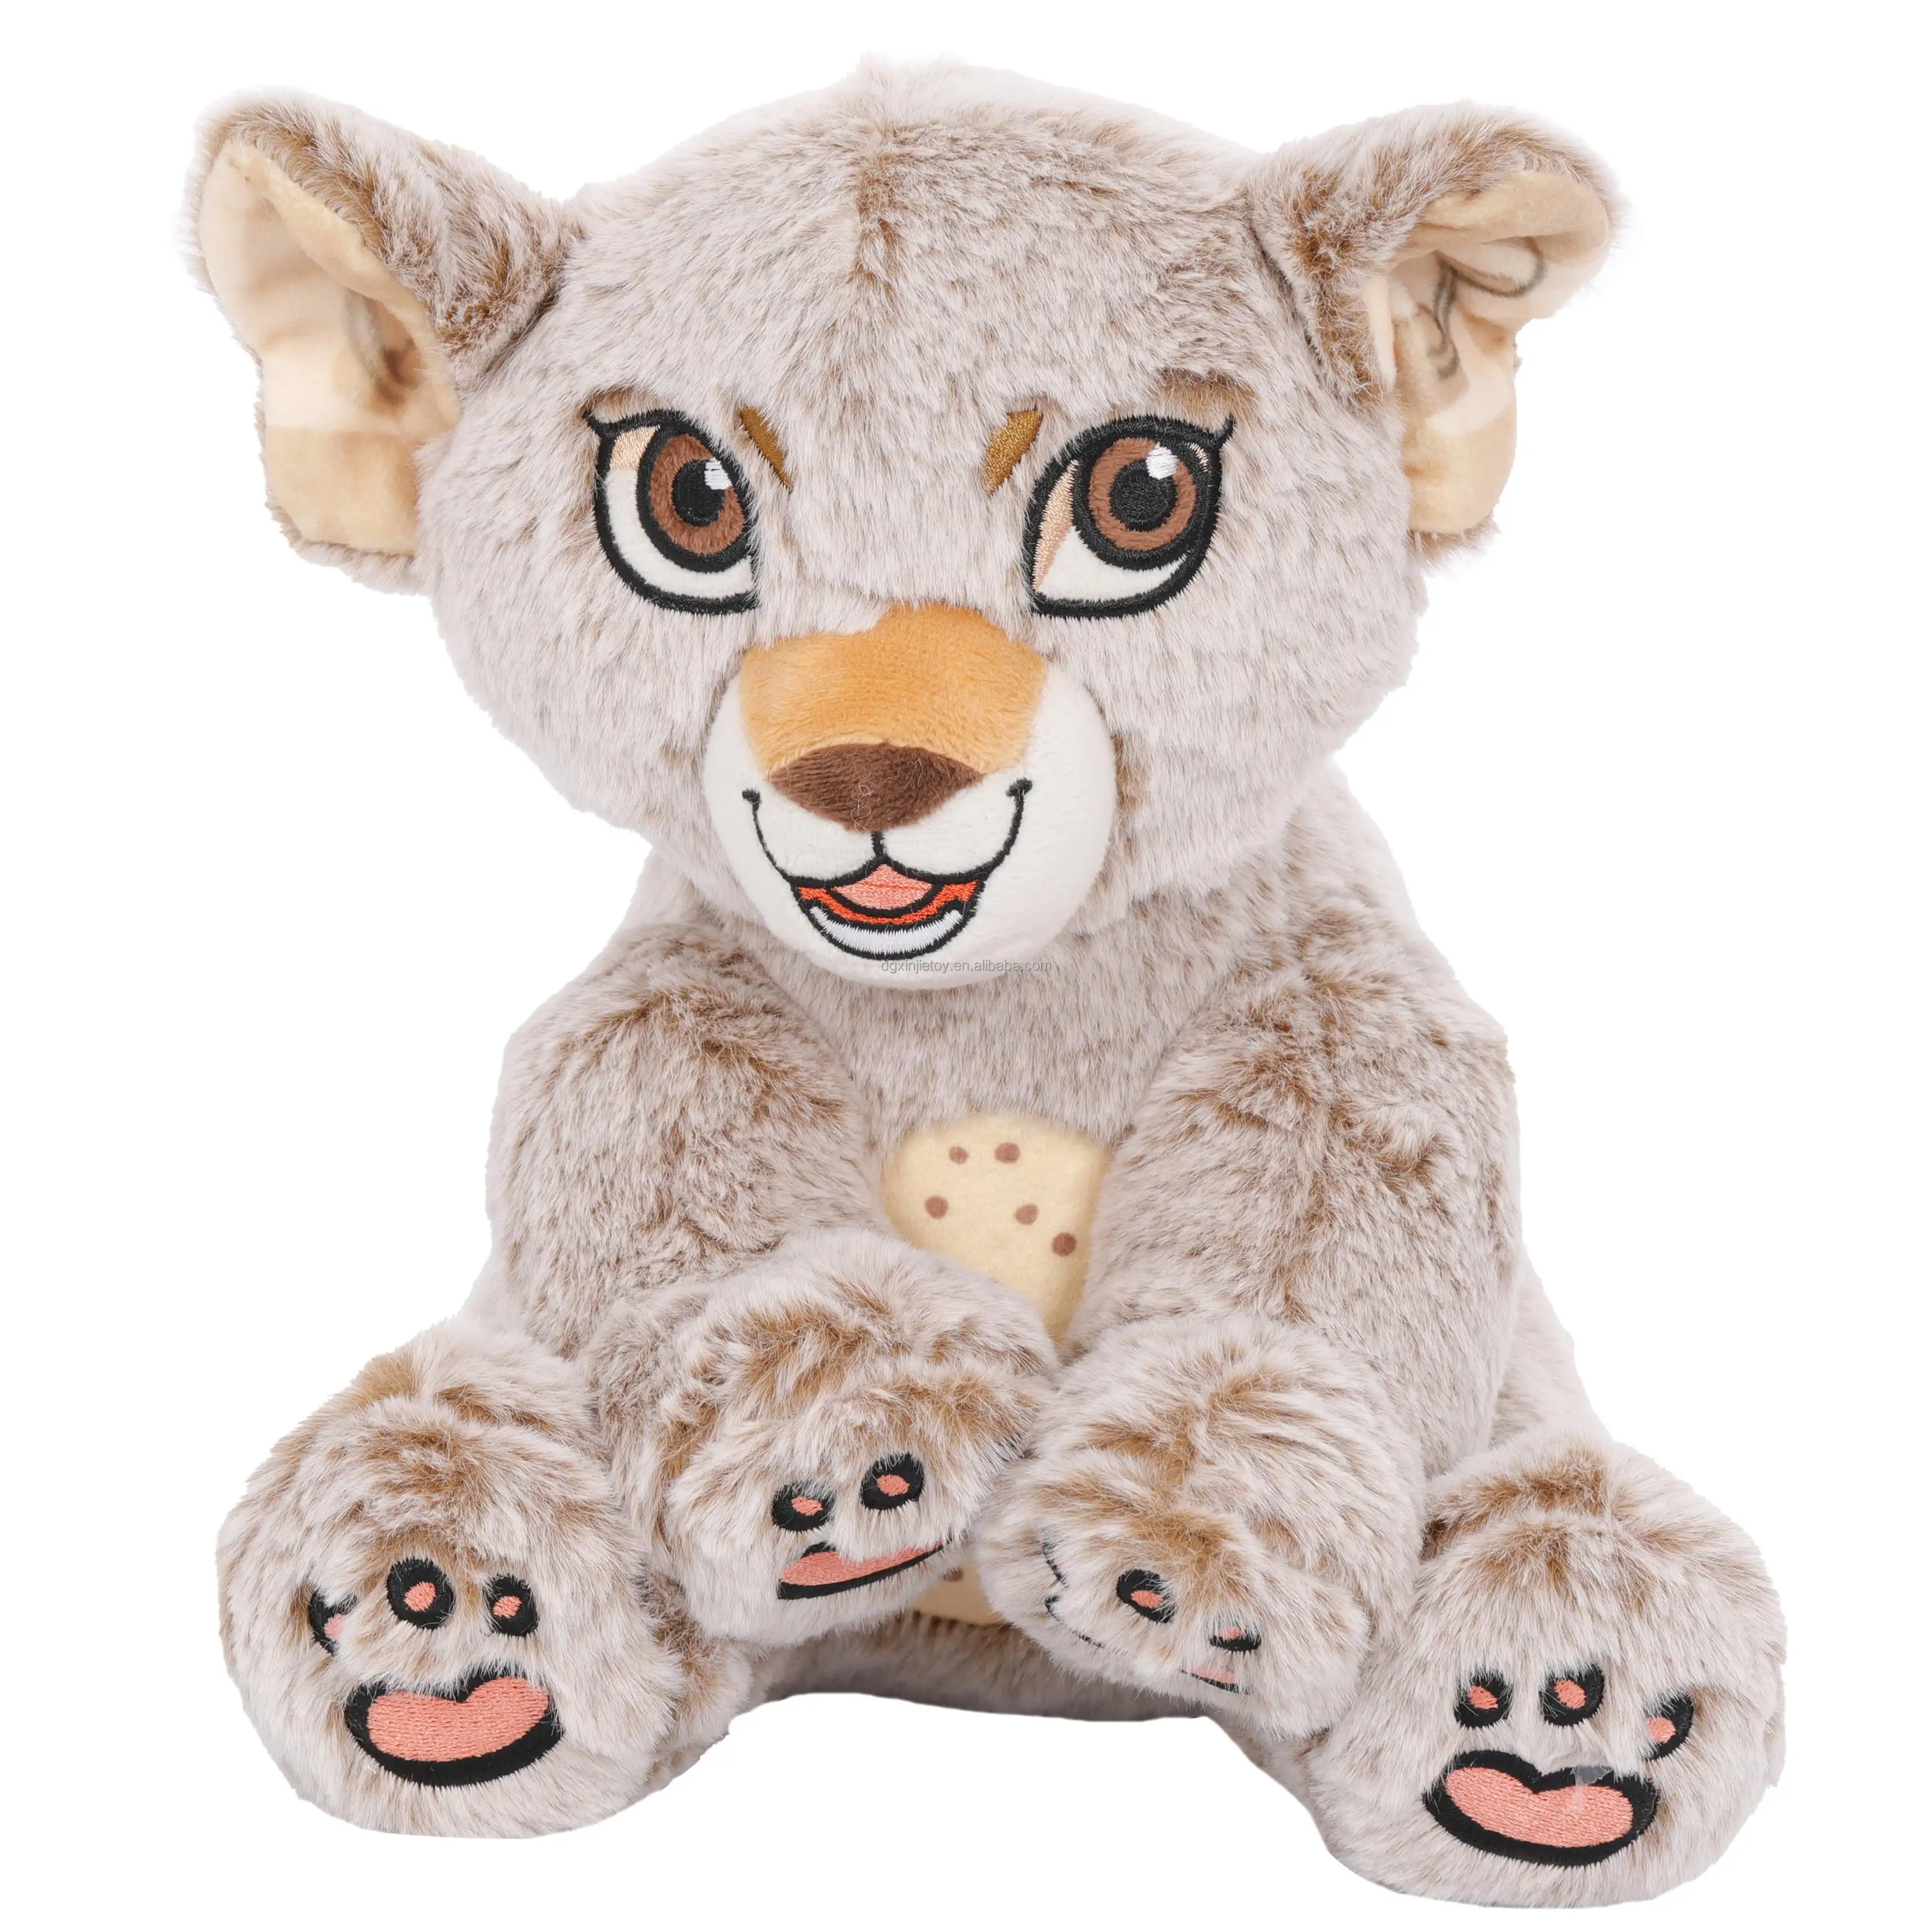 Juguetes de peluche de leopardo al por mayor de alta calidad con bordado, juguete de peluche de leopardo con postura sentada personalizada